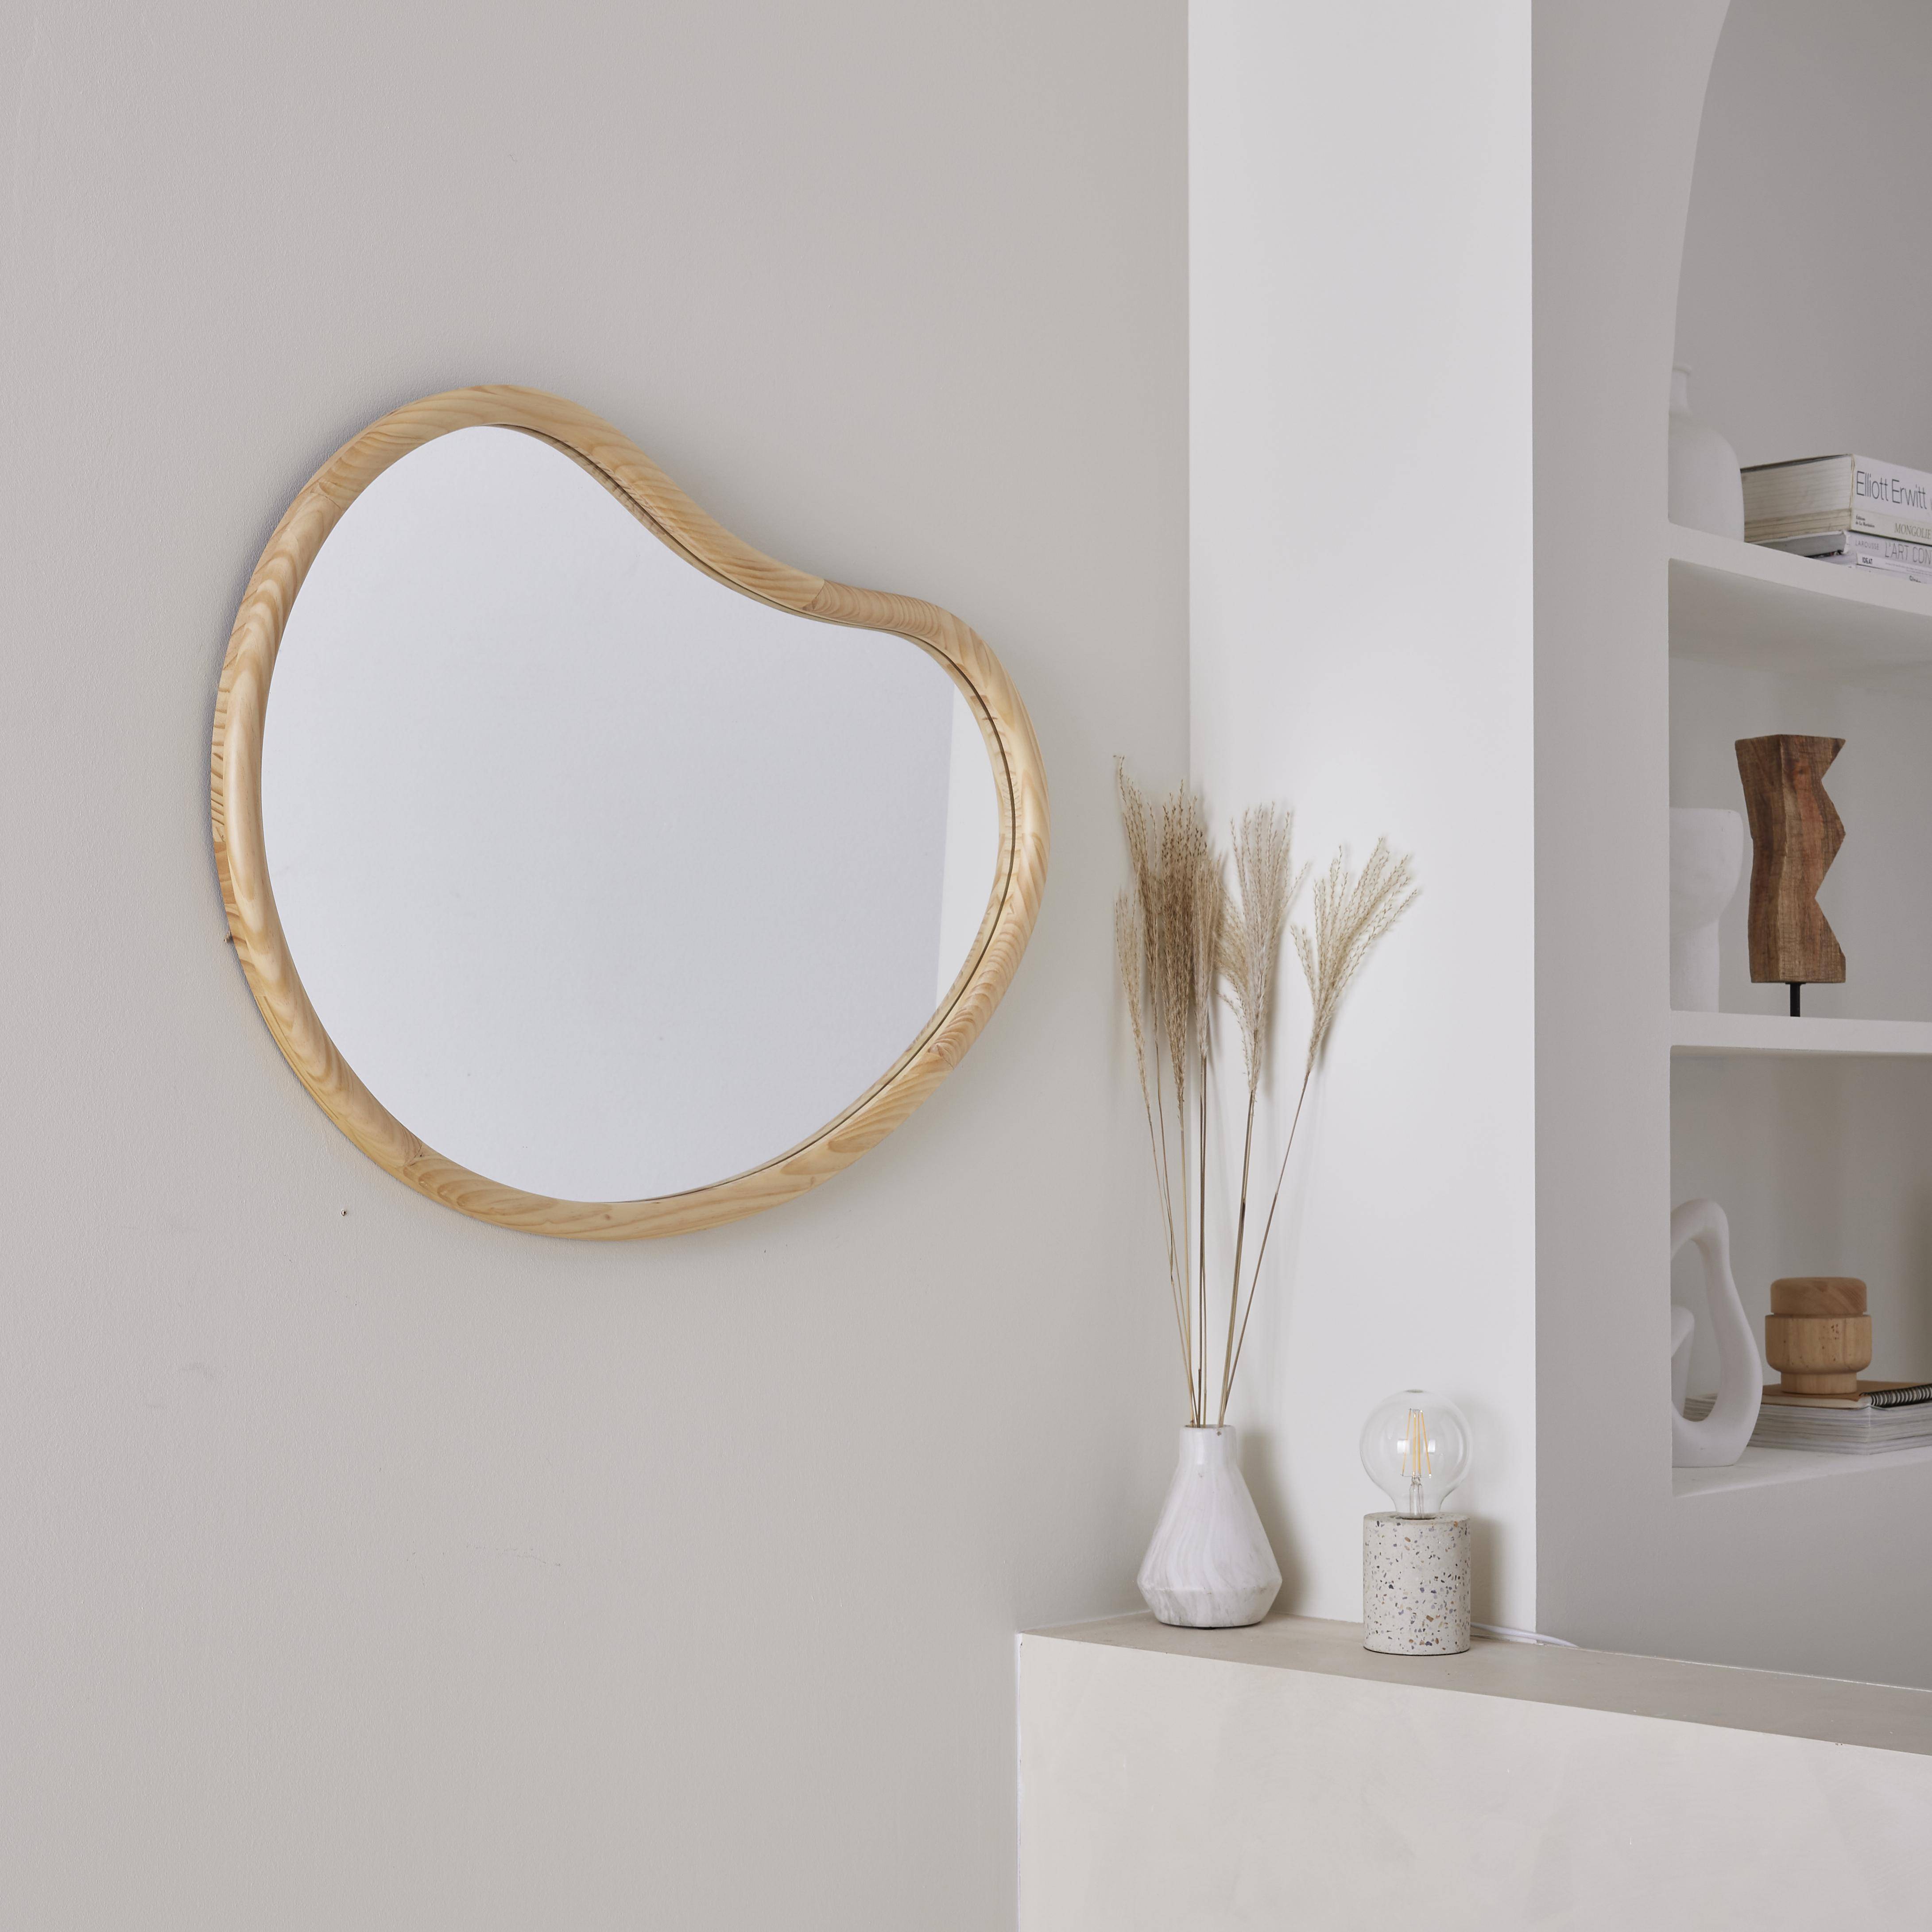 Organischer Spiegel aus Tannenholz 85cm 3cm dick naturfarben ideal für Eingang, Schlafzimmer oder Bad - Jacob,sweeek,Photo2